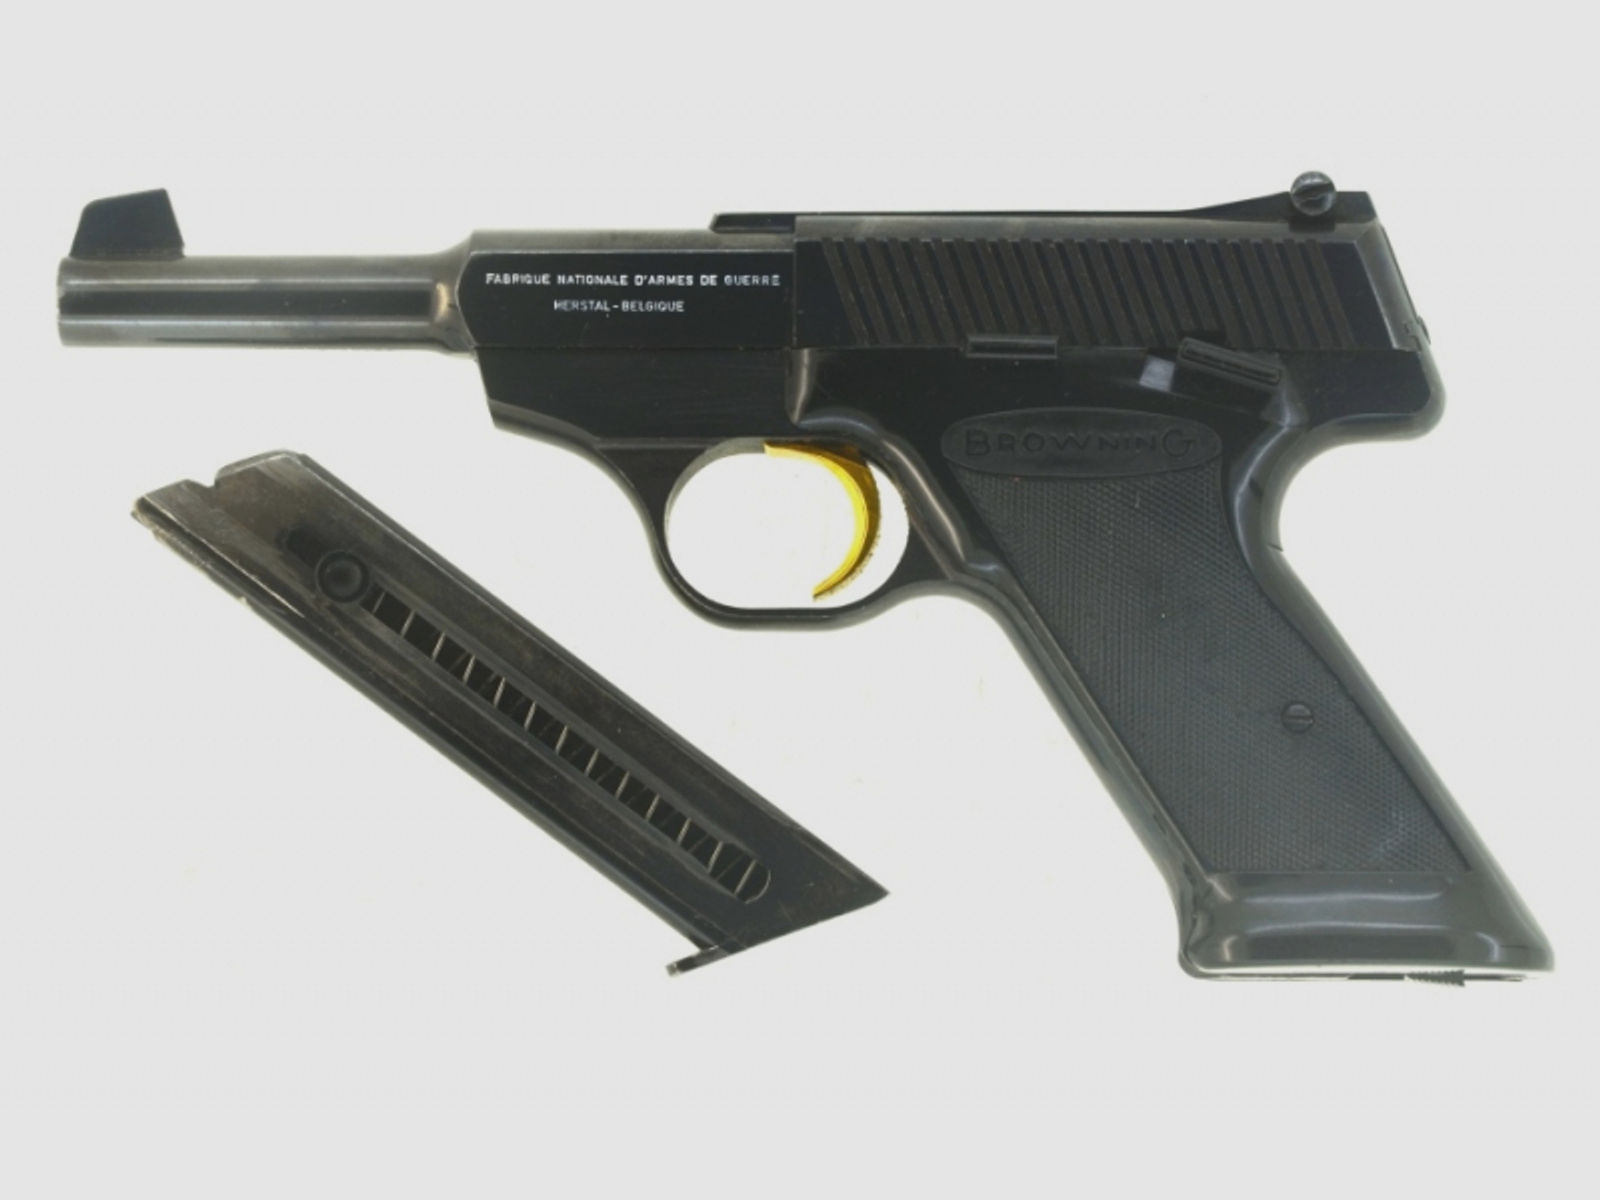 Sportwaffe KK-Pistole Selbstladepistole Matchwaffe FN Mod. 150 Kal. .22 l.r., tiptop!!!